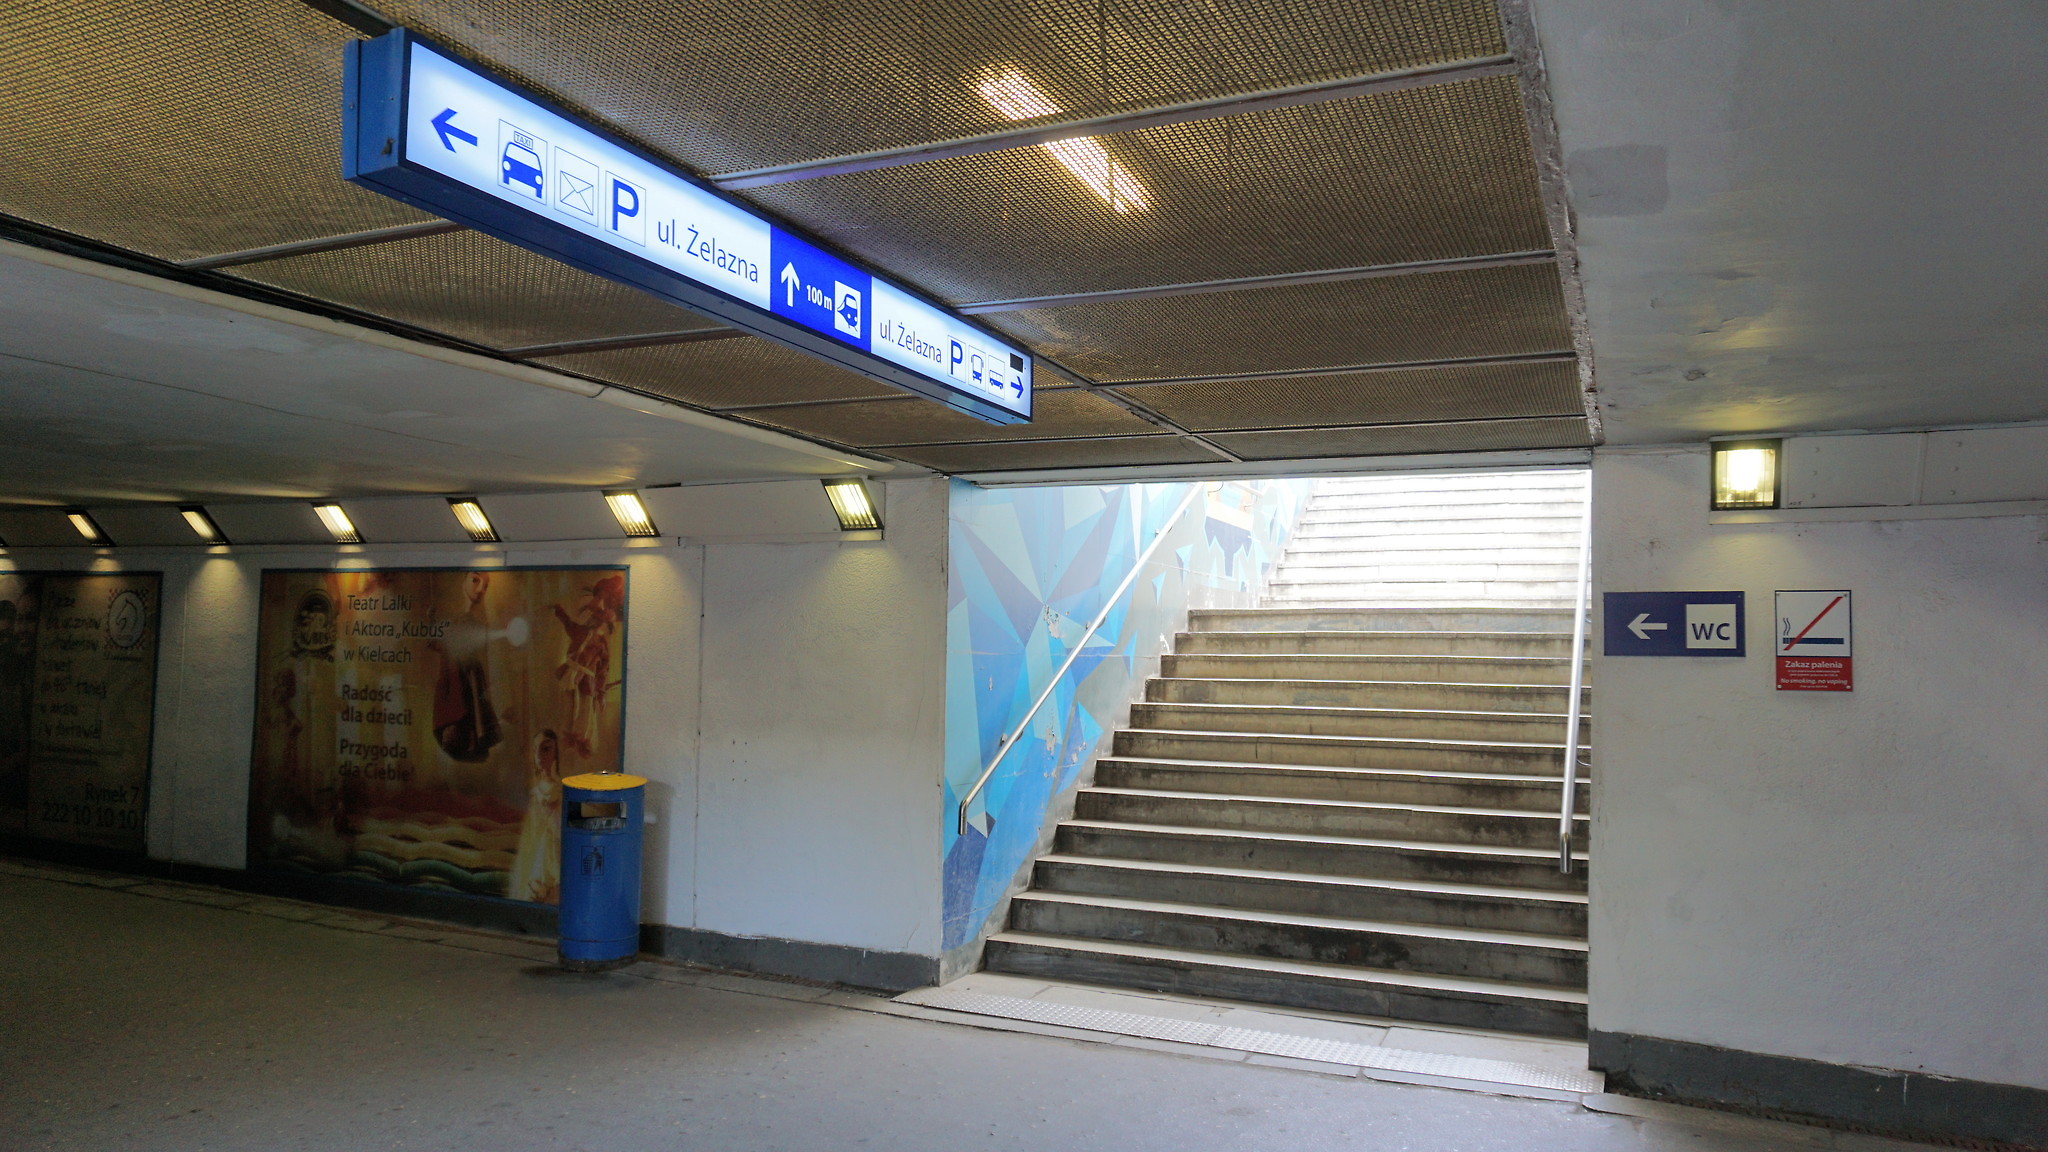 3 listopada z ruchu podróżnych zostanie wyłączona część tunelu znajdująca się bezpośrednio pod modernizowanym budynkiem.